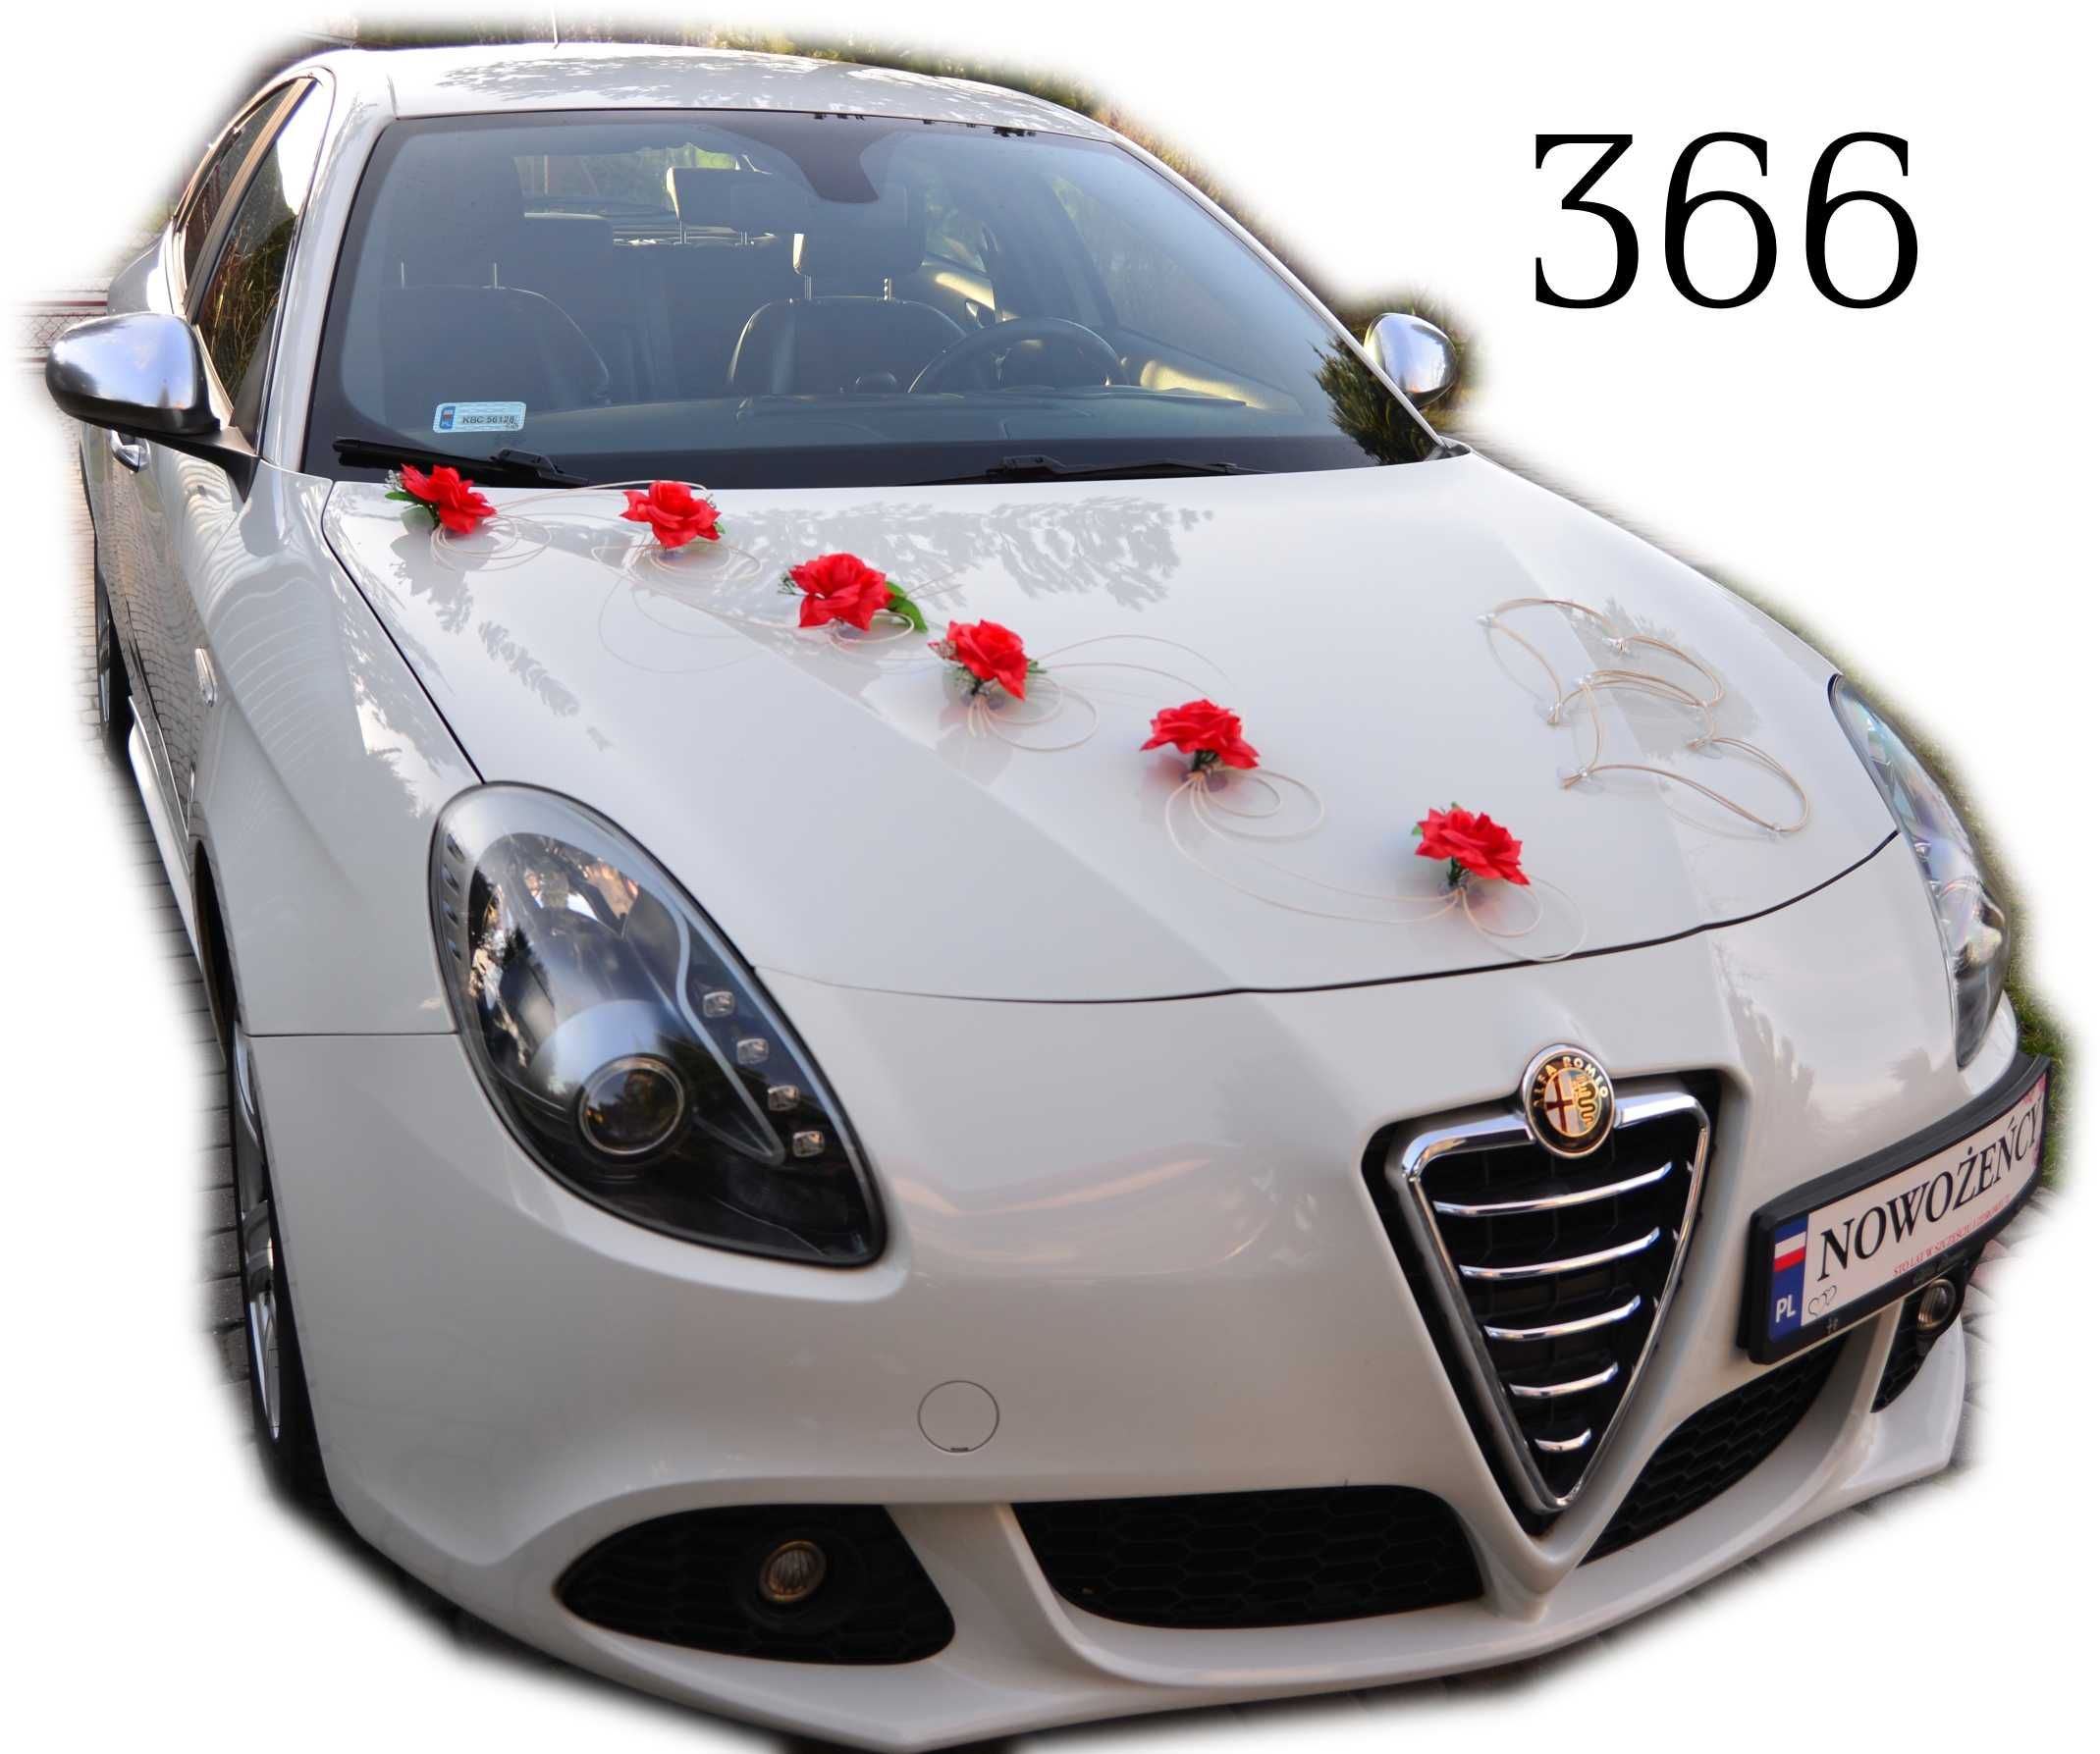 TWOJA Czerwona dekoracja ozdoba na Twój ślubny samochód Nr 366